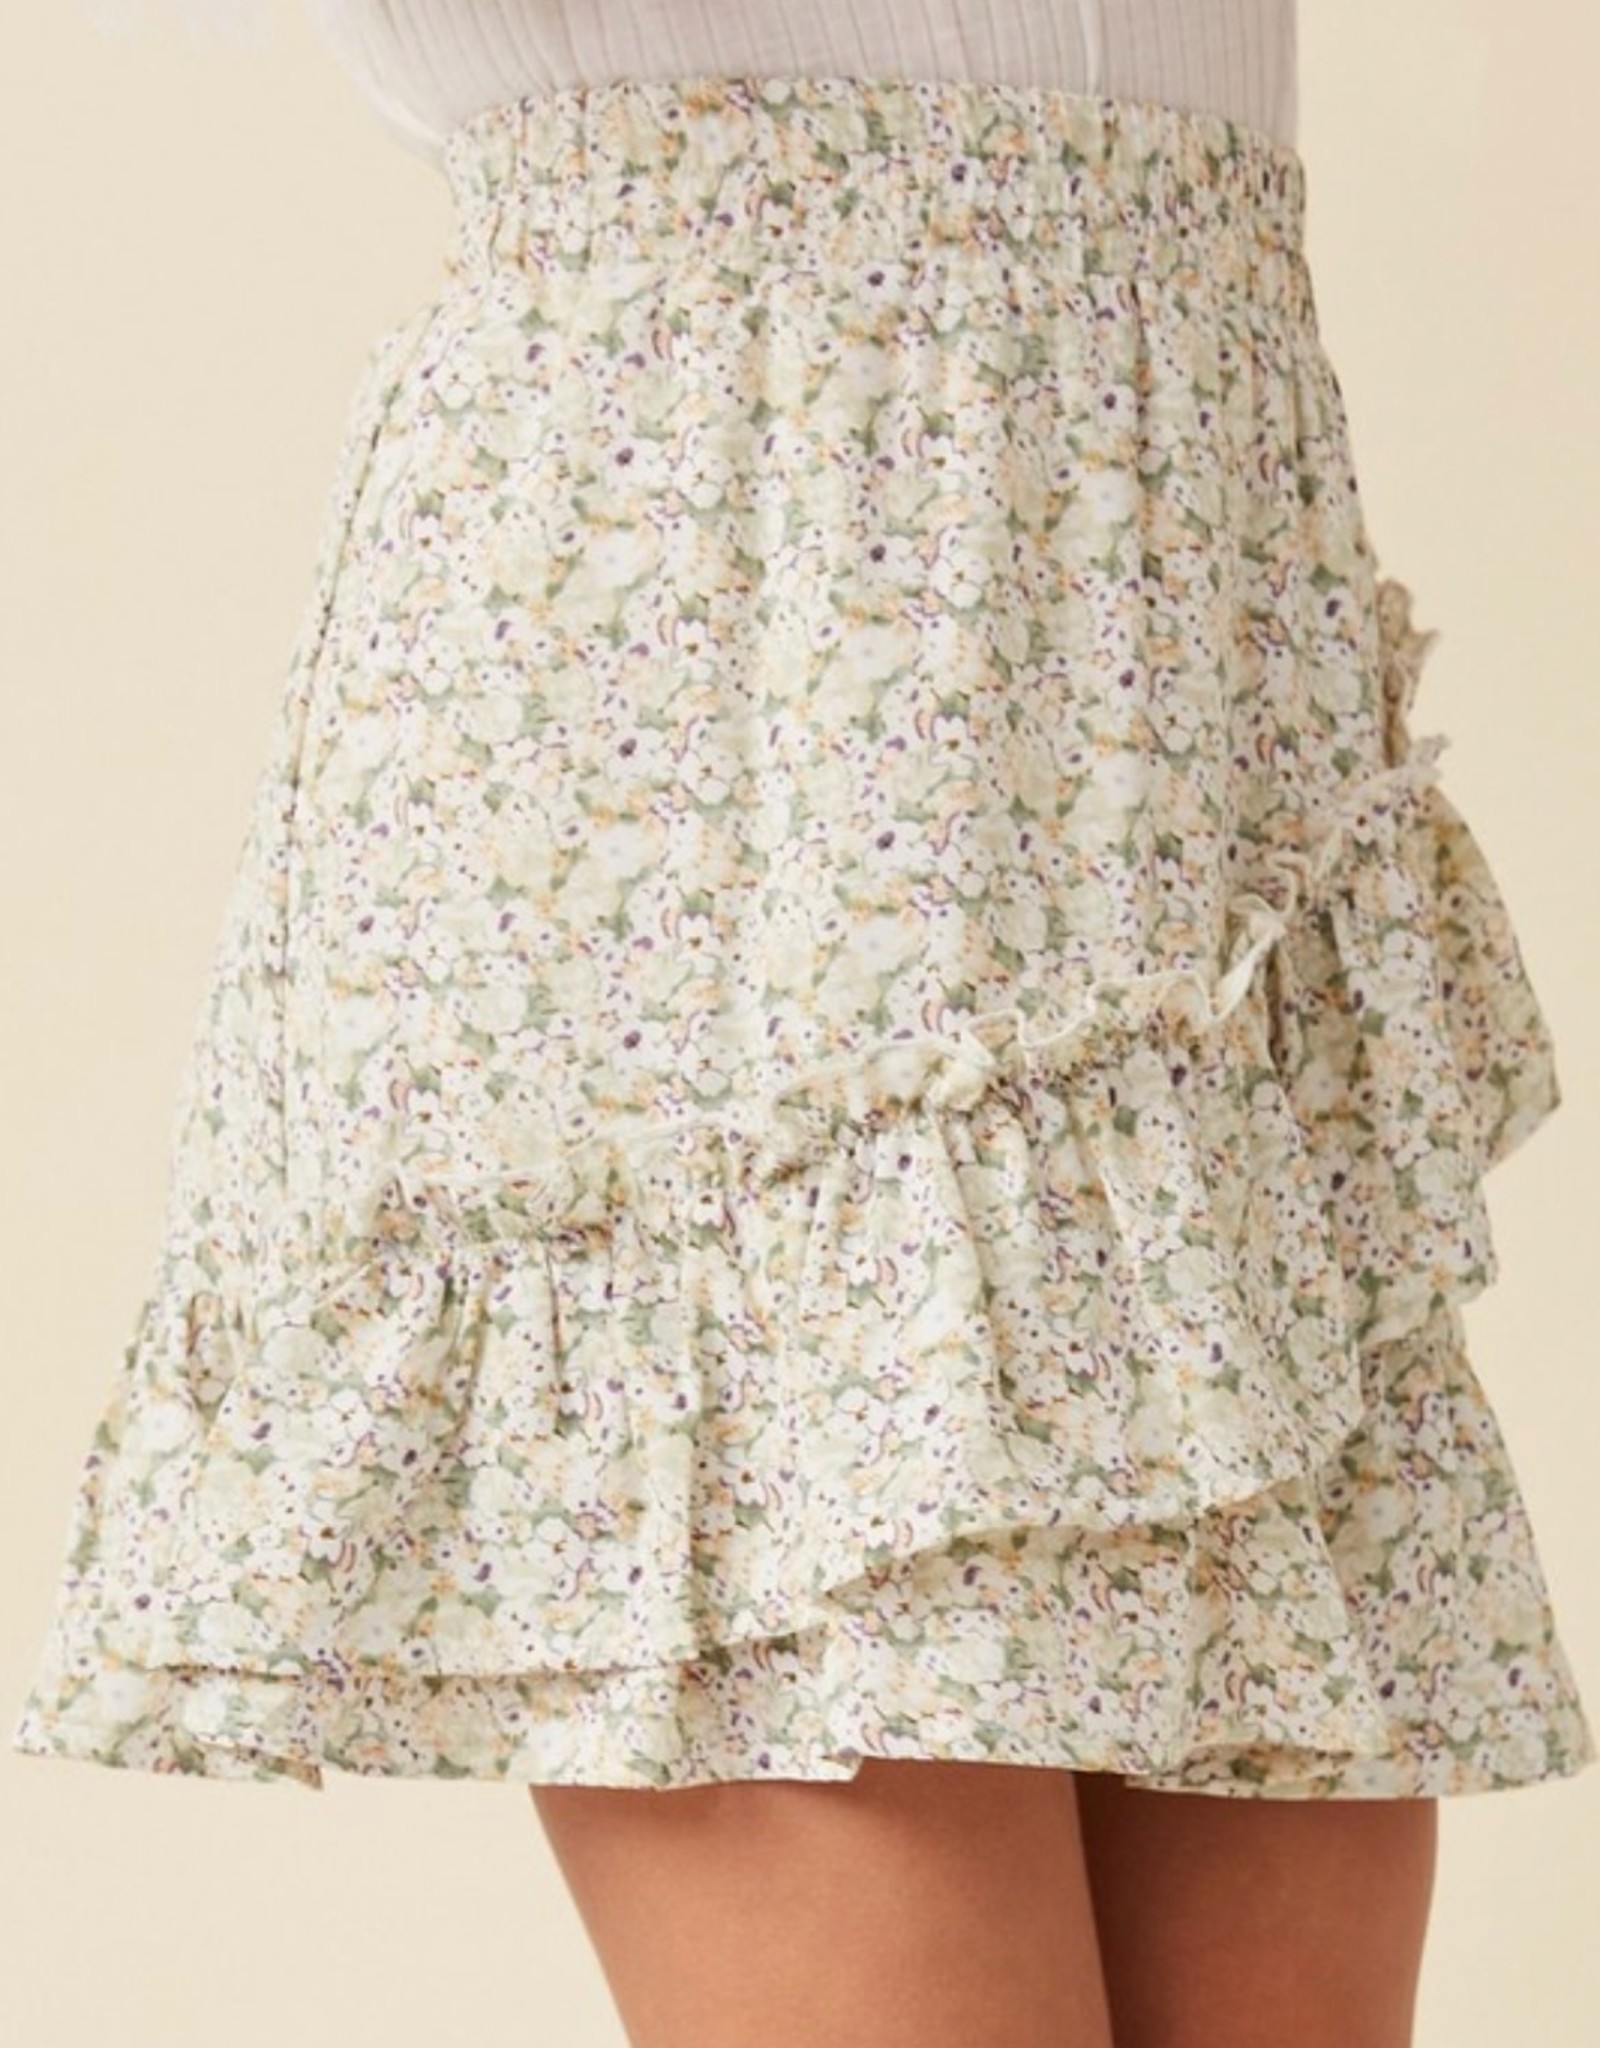 Hayden Laura Floral Skirt in Sage Mix